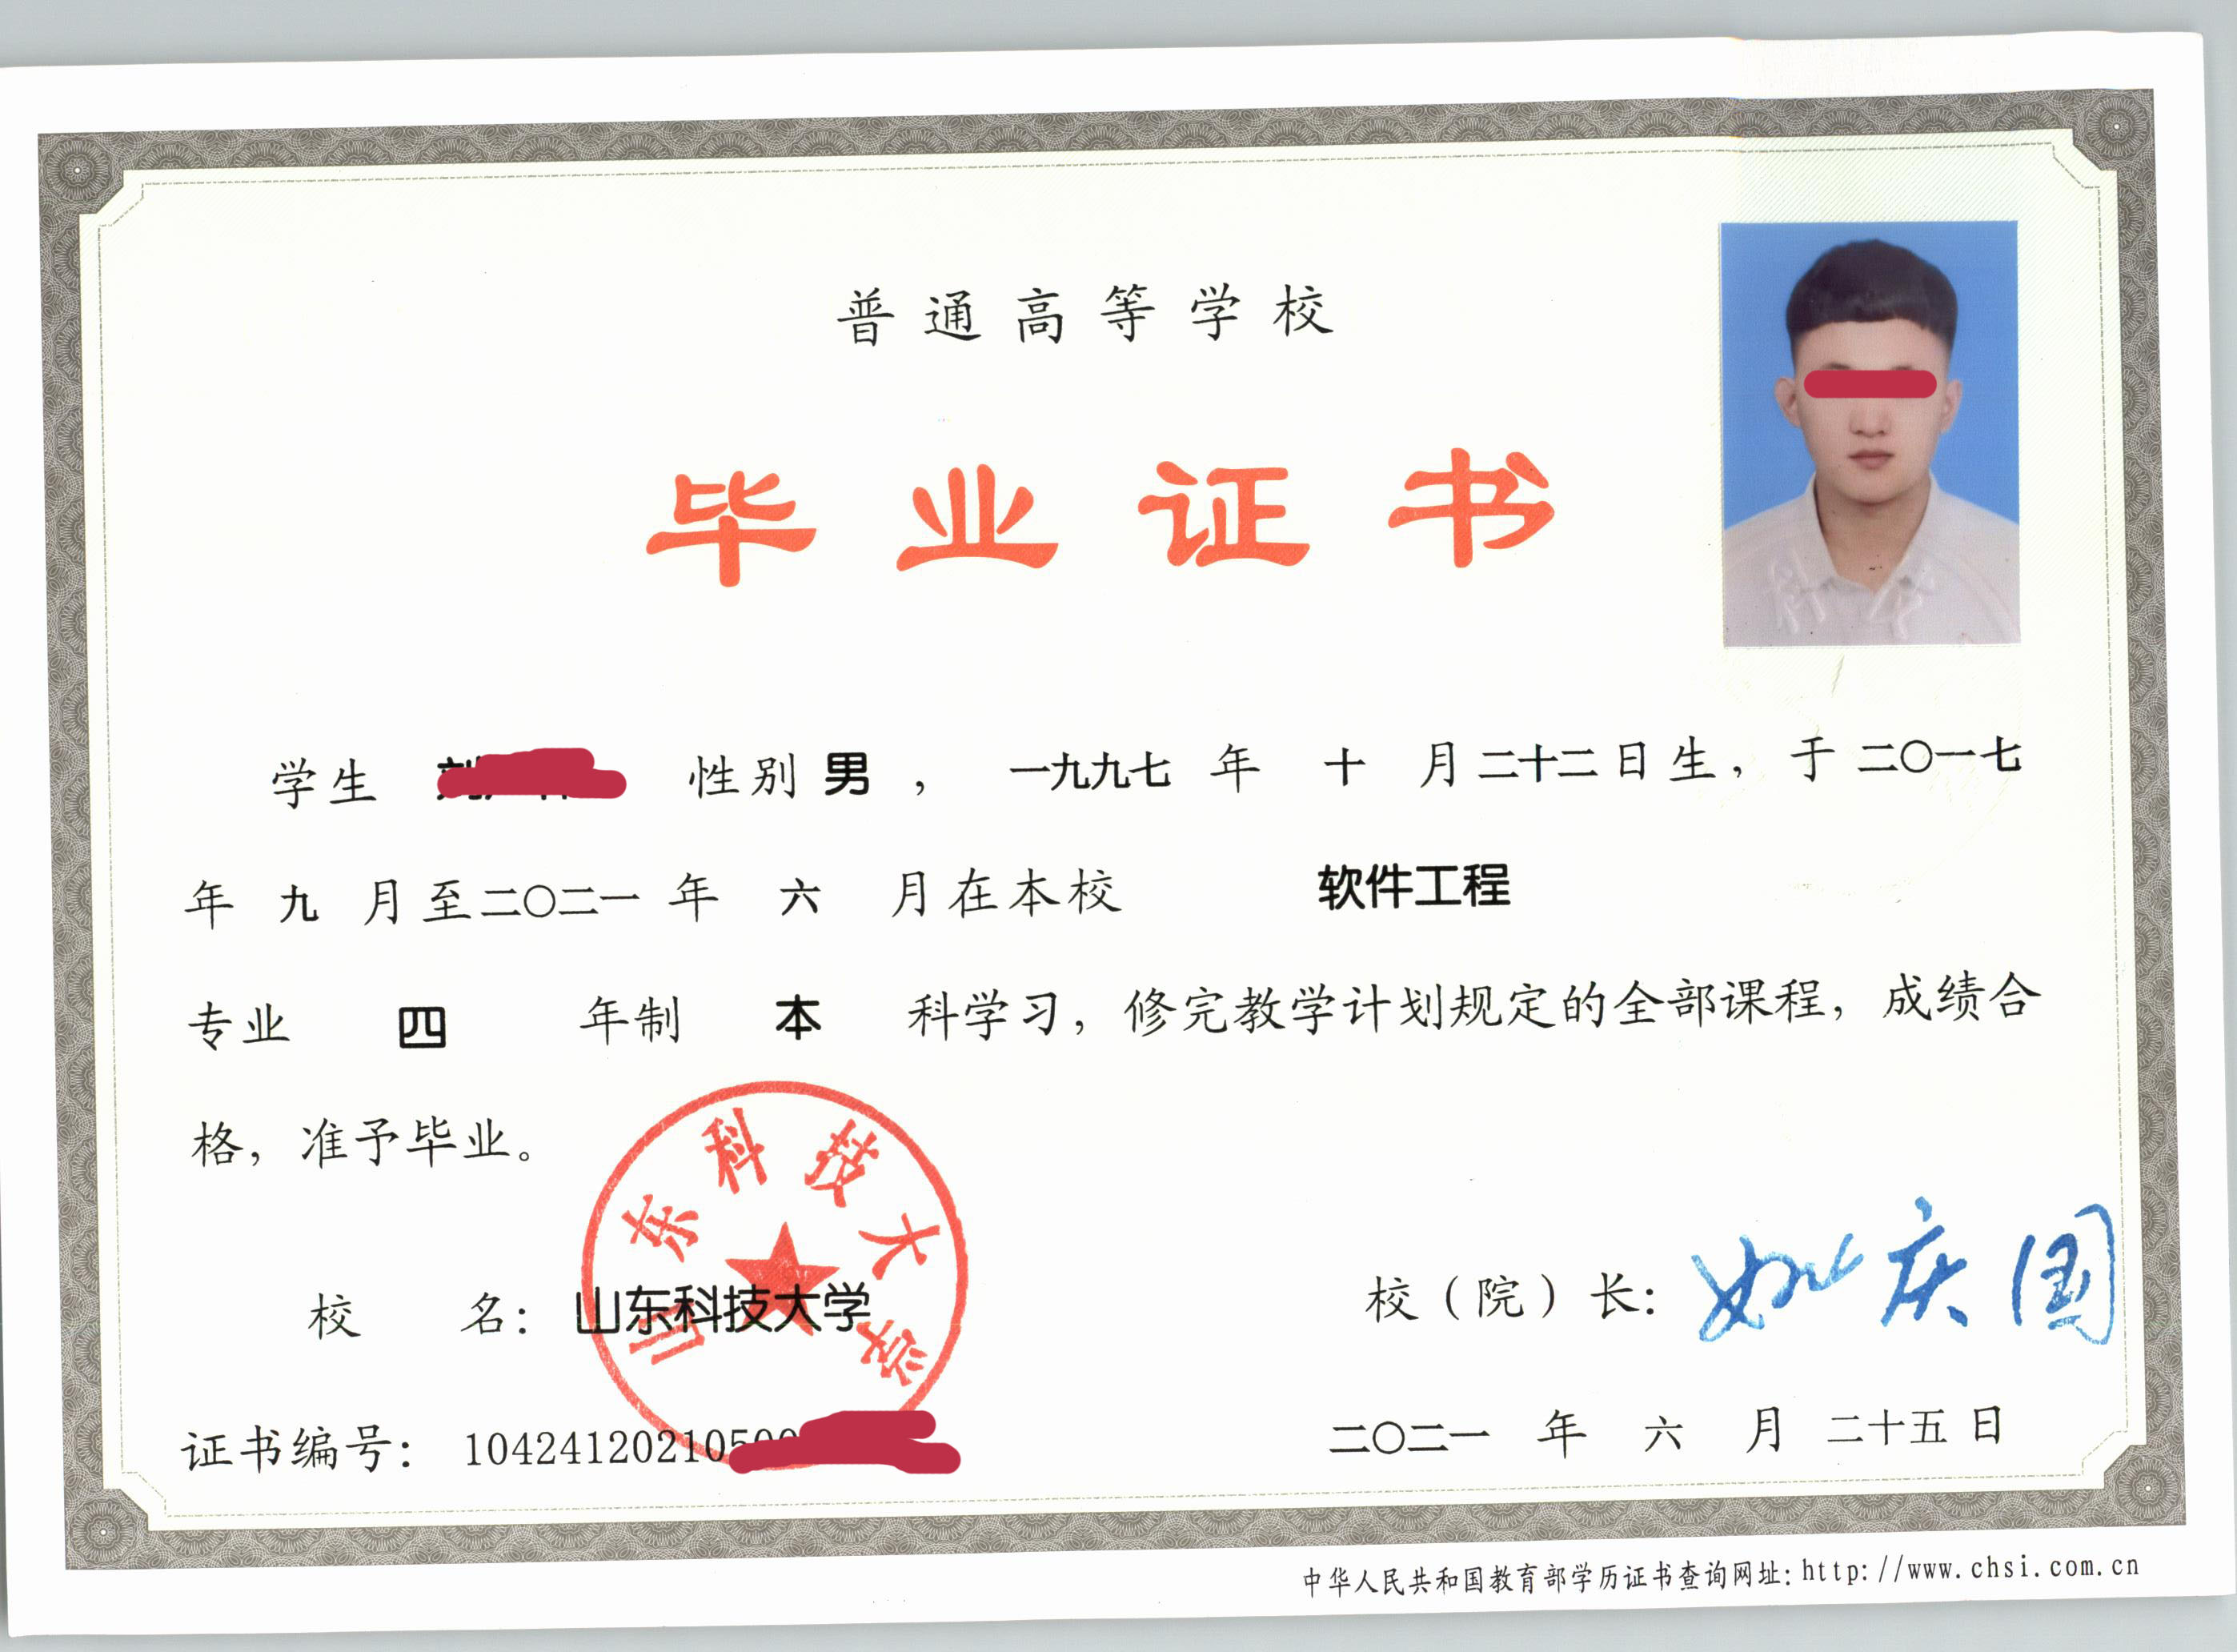 云南体育运动职业技术学院毕业证书照片